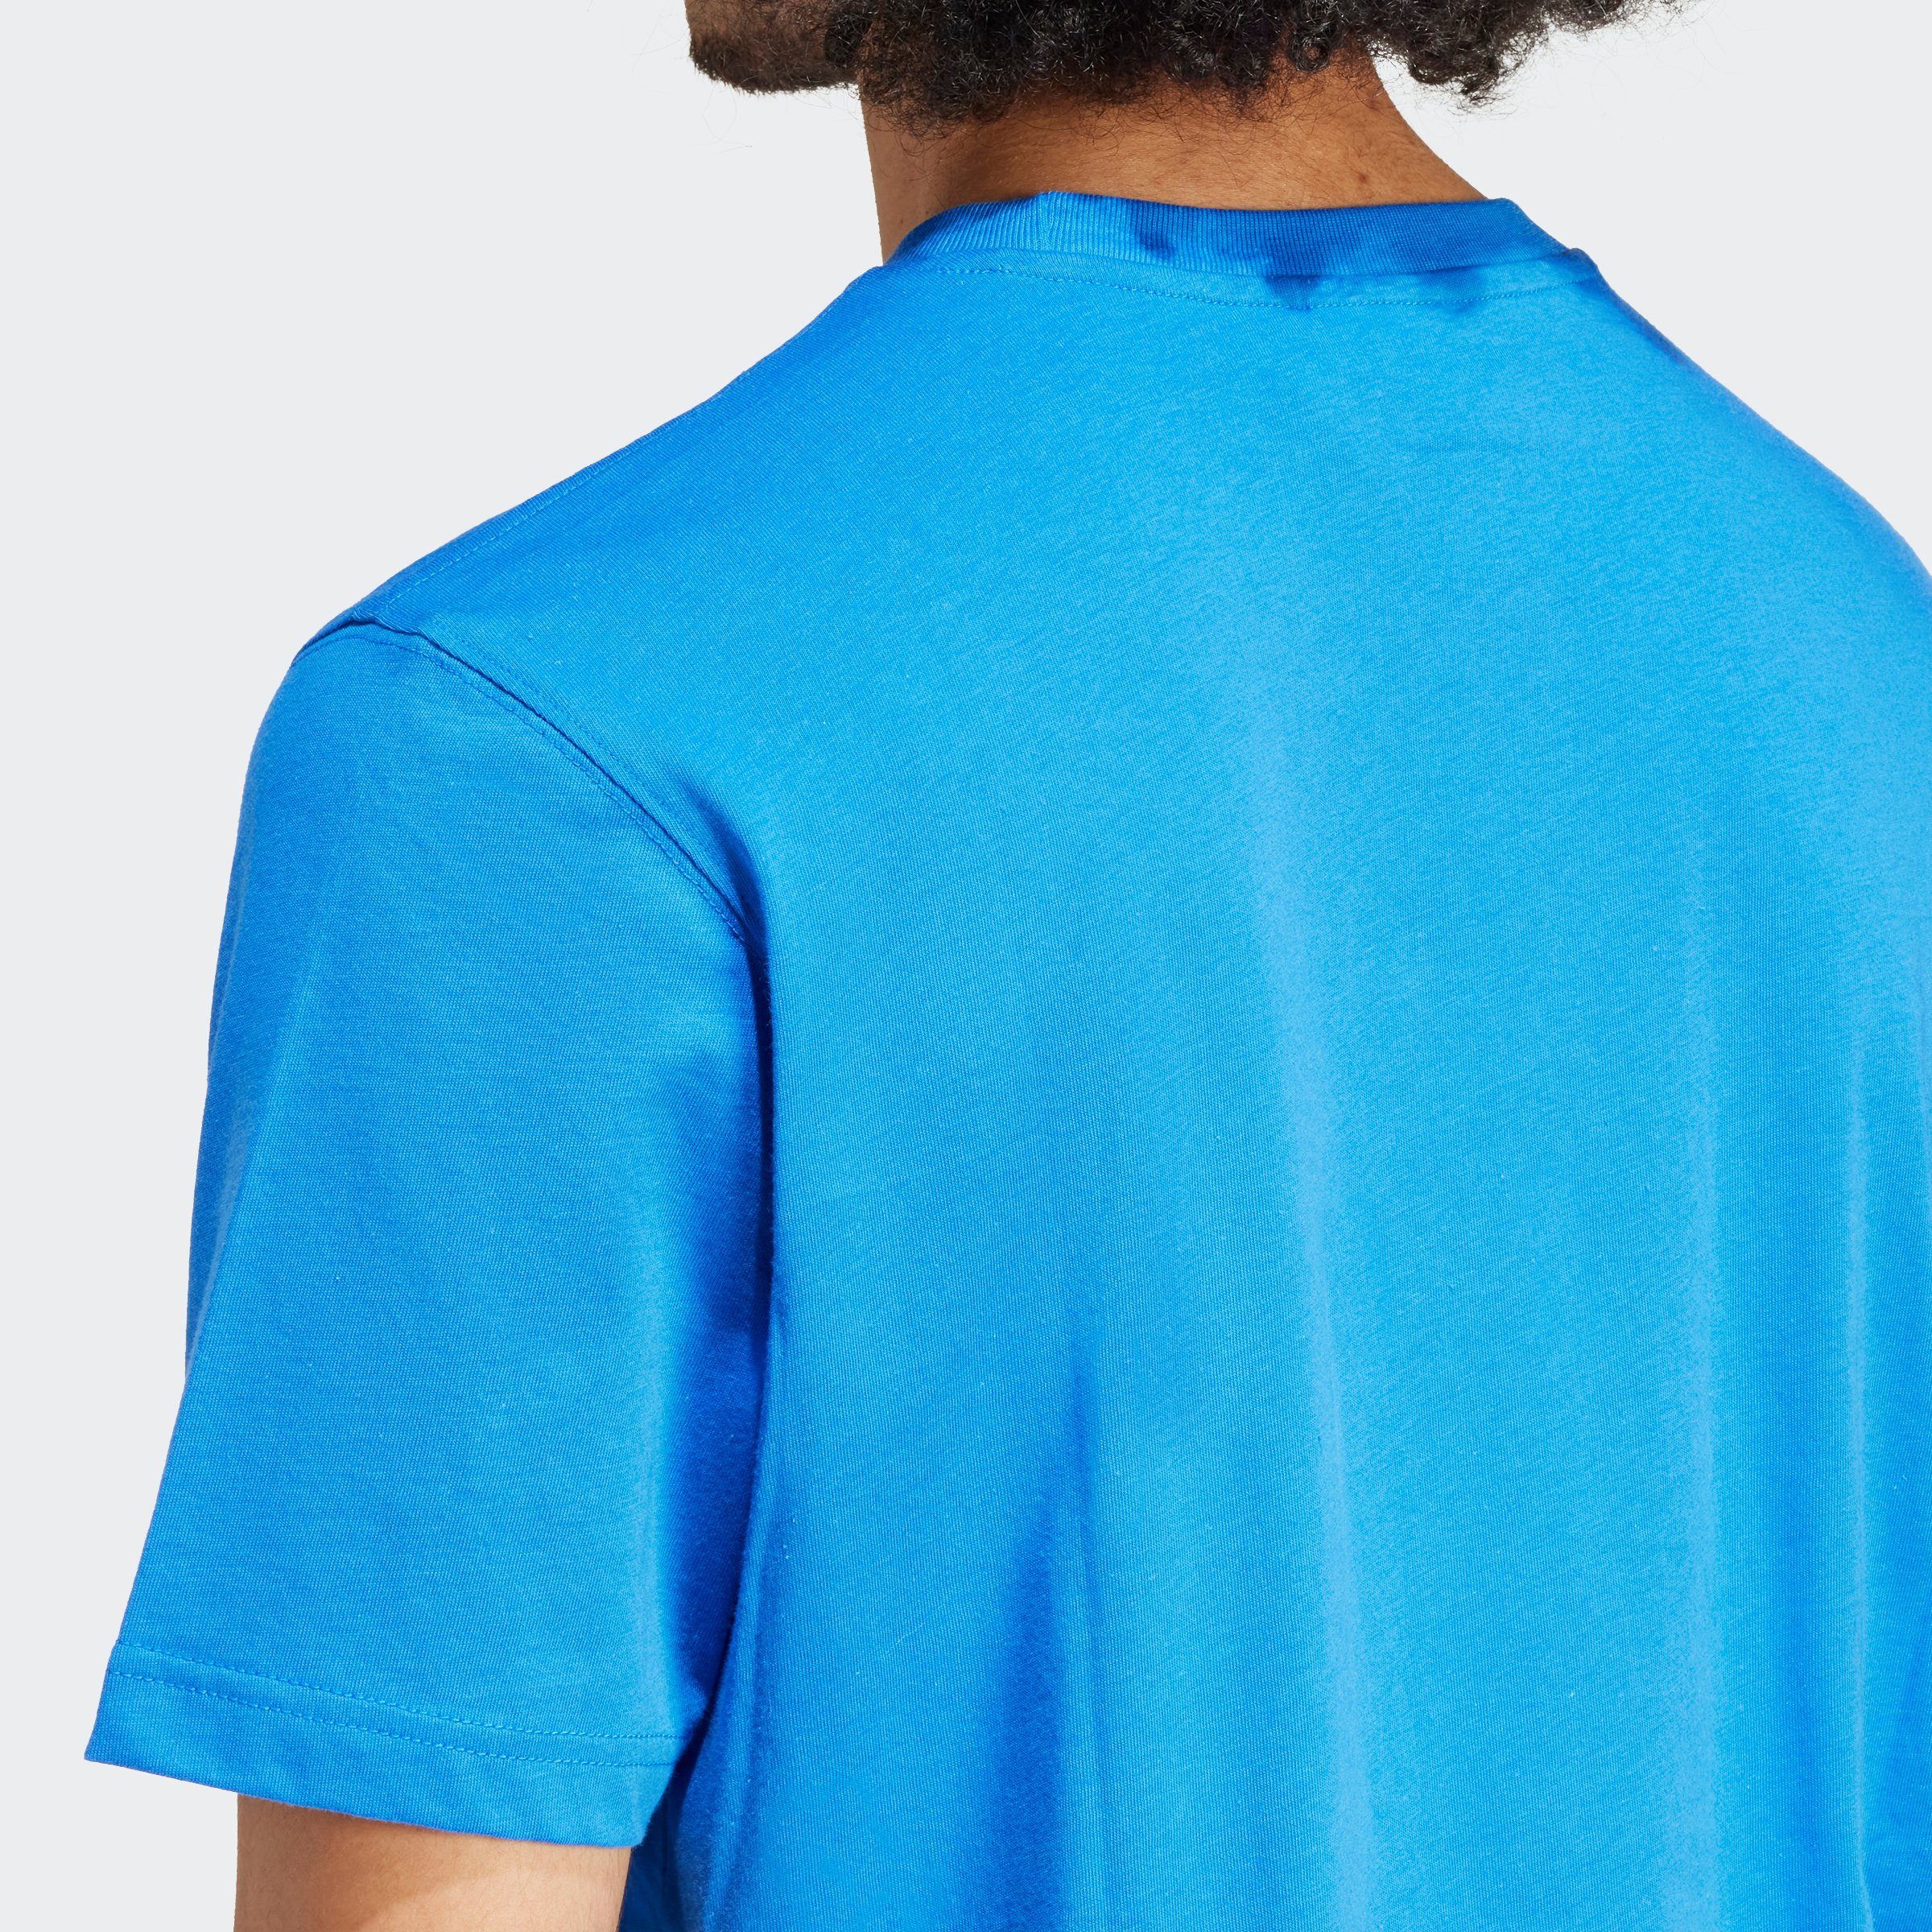 TEE T-Shirt adidas BLUE Originals ESSENTIAL